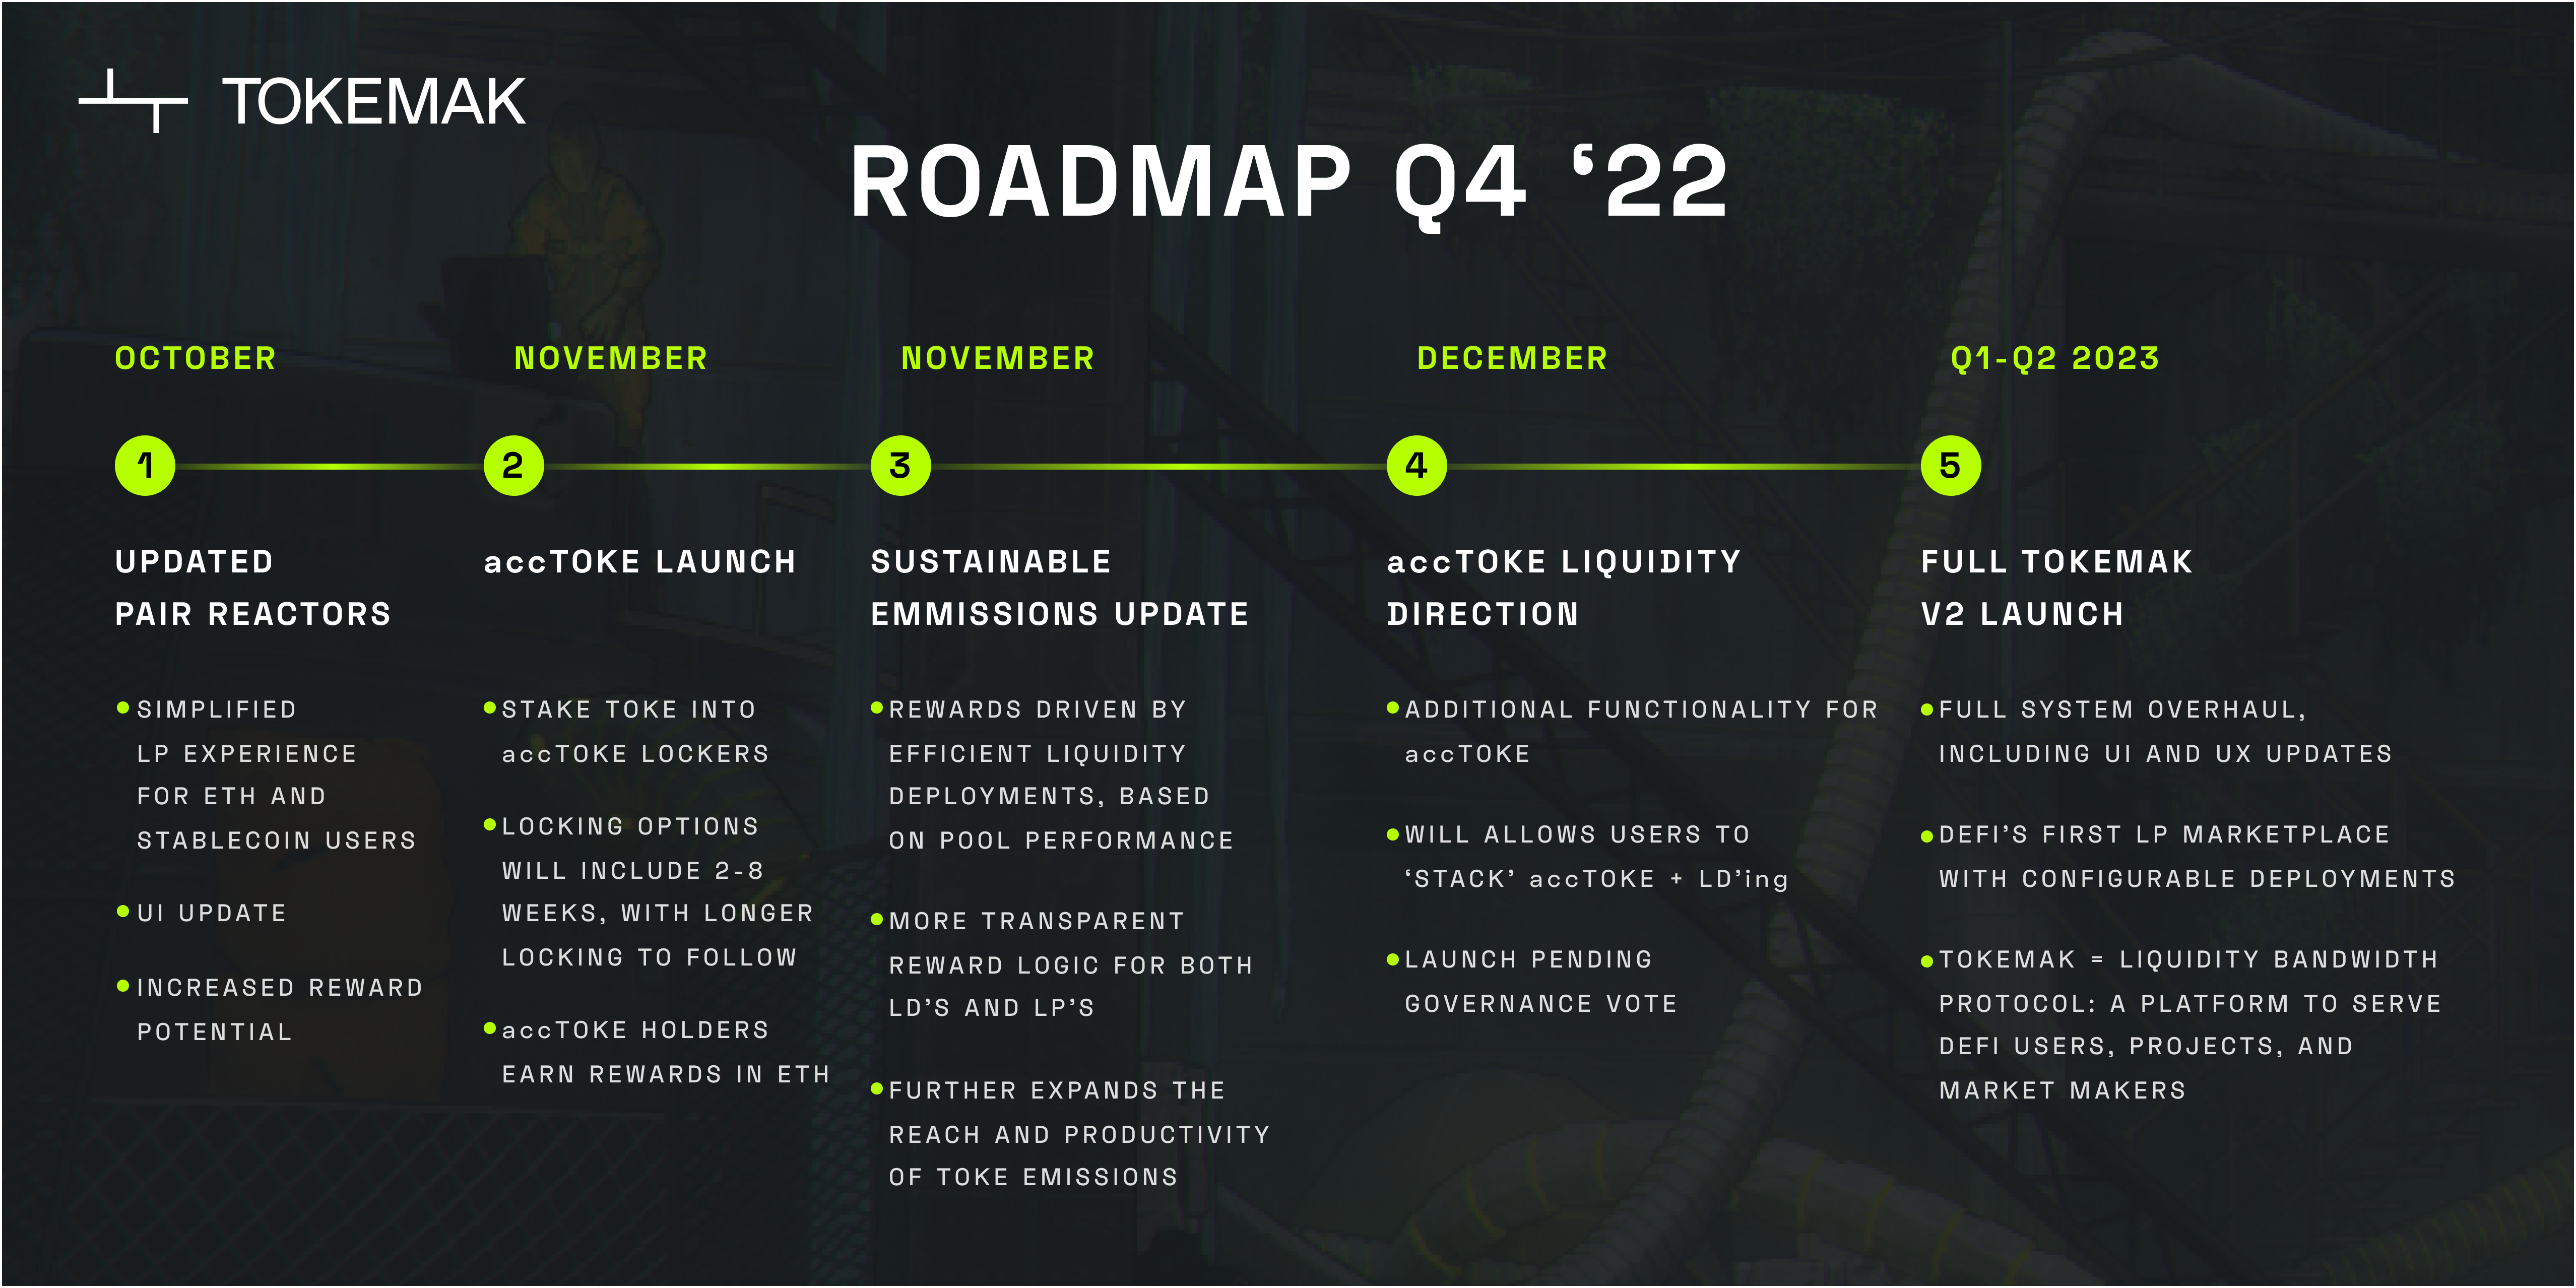 Tokemak roadmap for Q4 2022